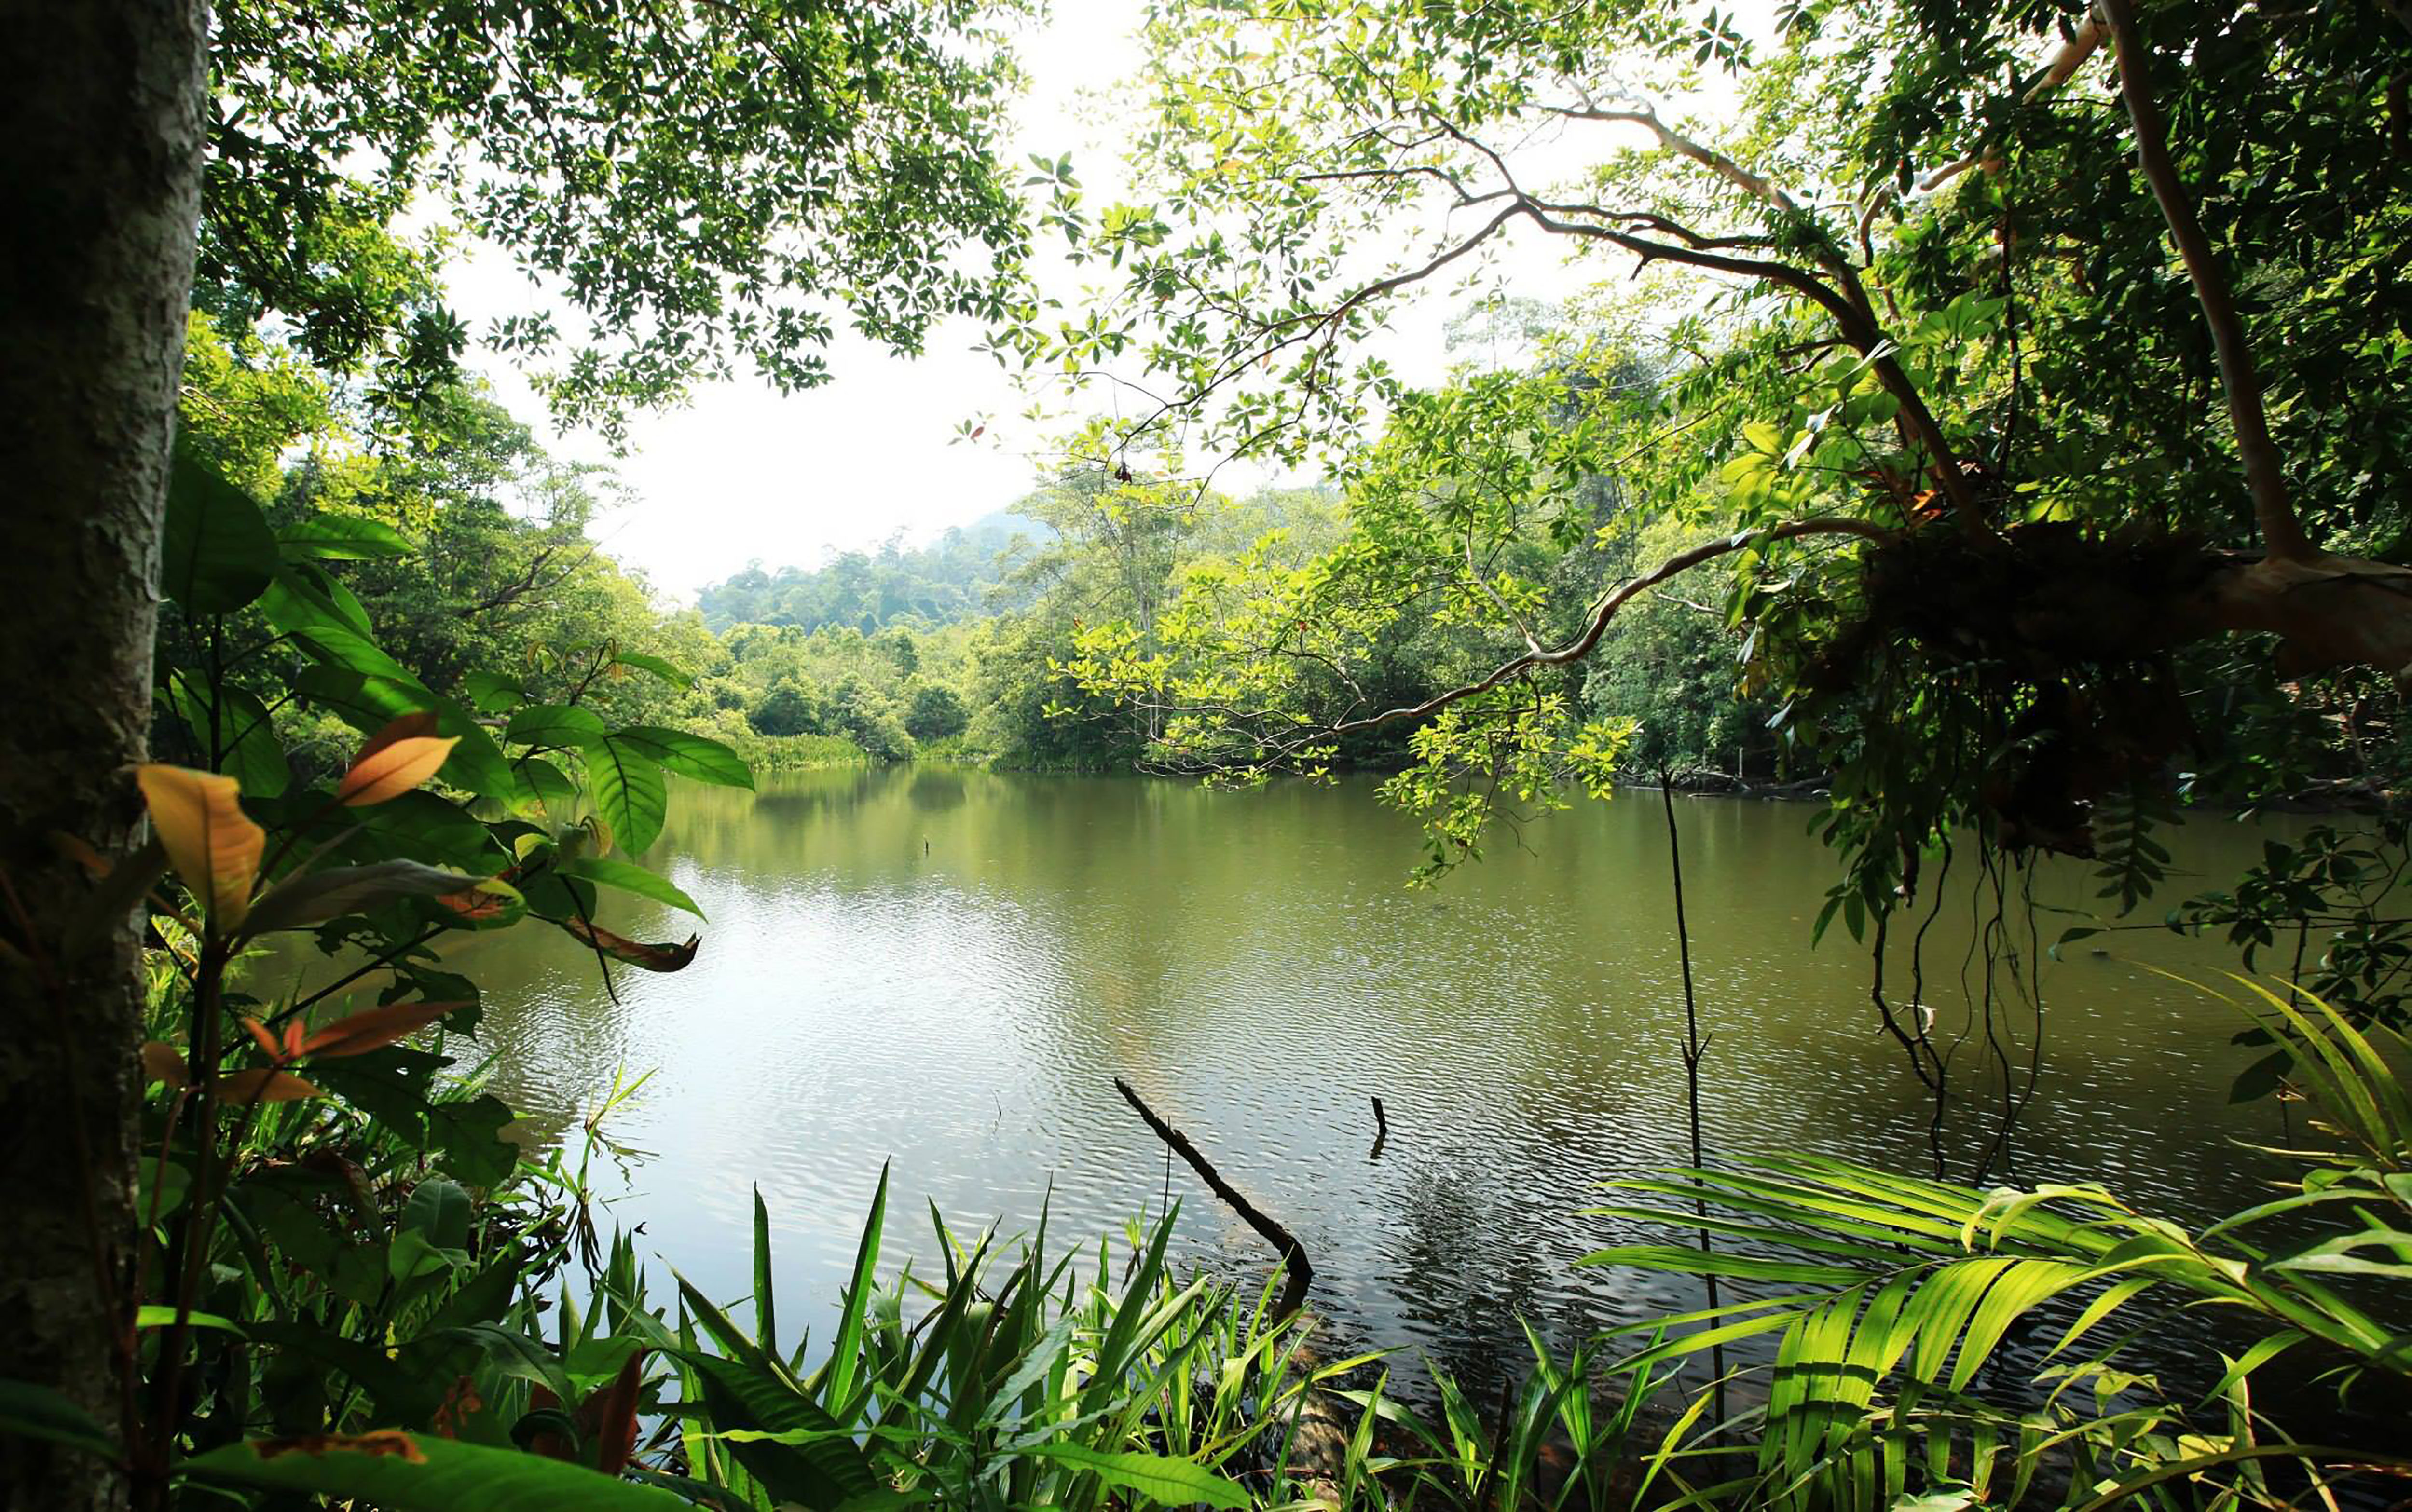 Фото тугайная зона тропические и субтропические хвойные леса бесплатные изображения - бесплатные картинки на Fonwall